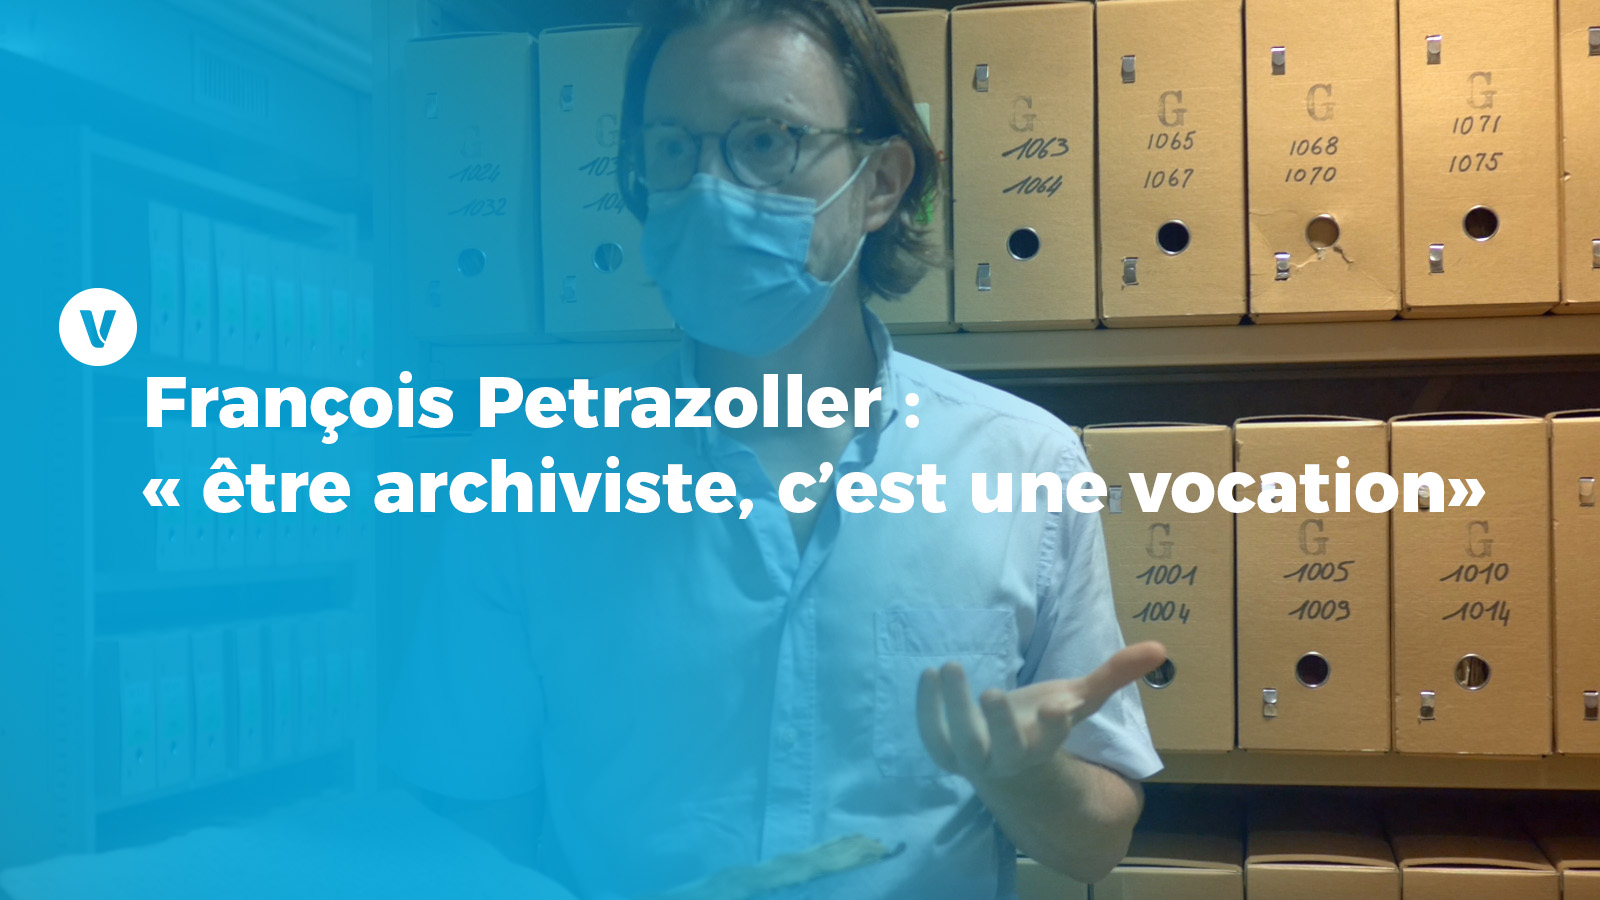 François Petrazoller : « être archiviste, c’est une vocation »